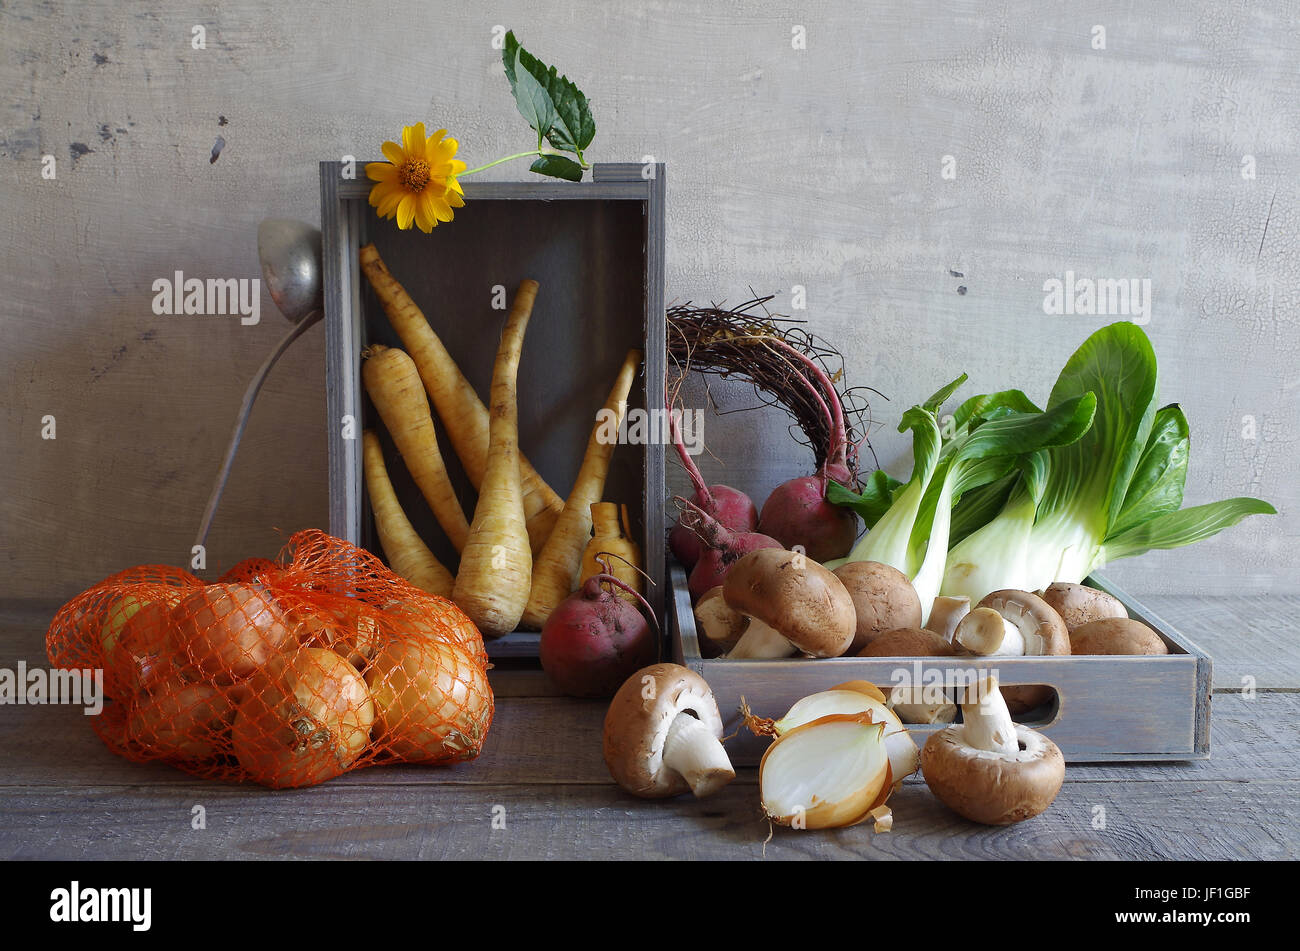 La vie toujours avec des légumes d'automne Banque D'Images